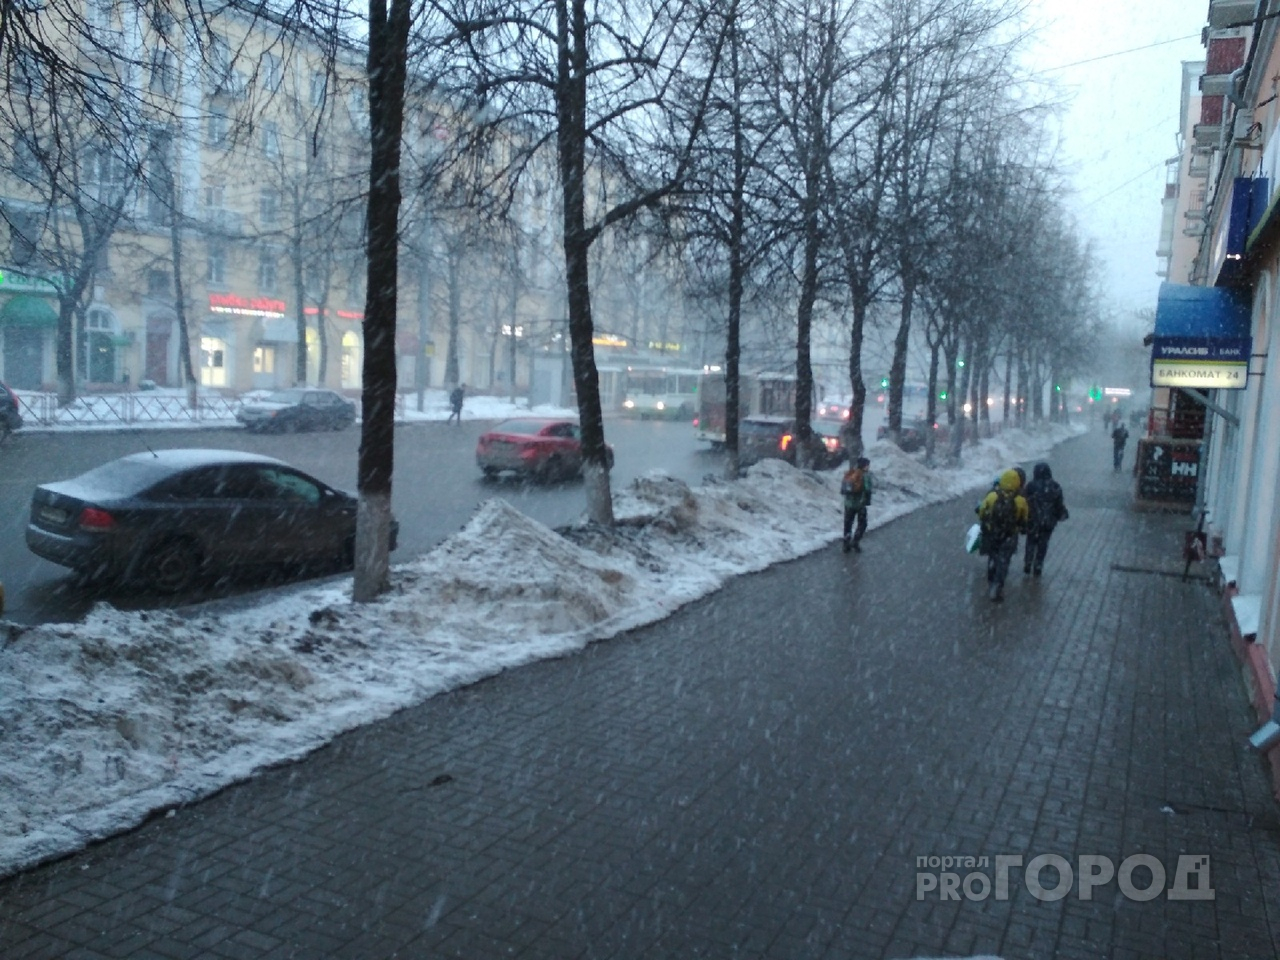 Снег выпадет ночью: экстренное предупреждение от МЧС о непогоде в Ярославле